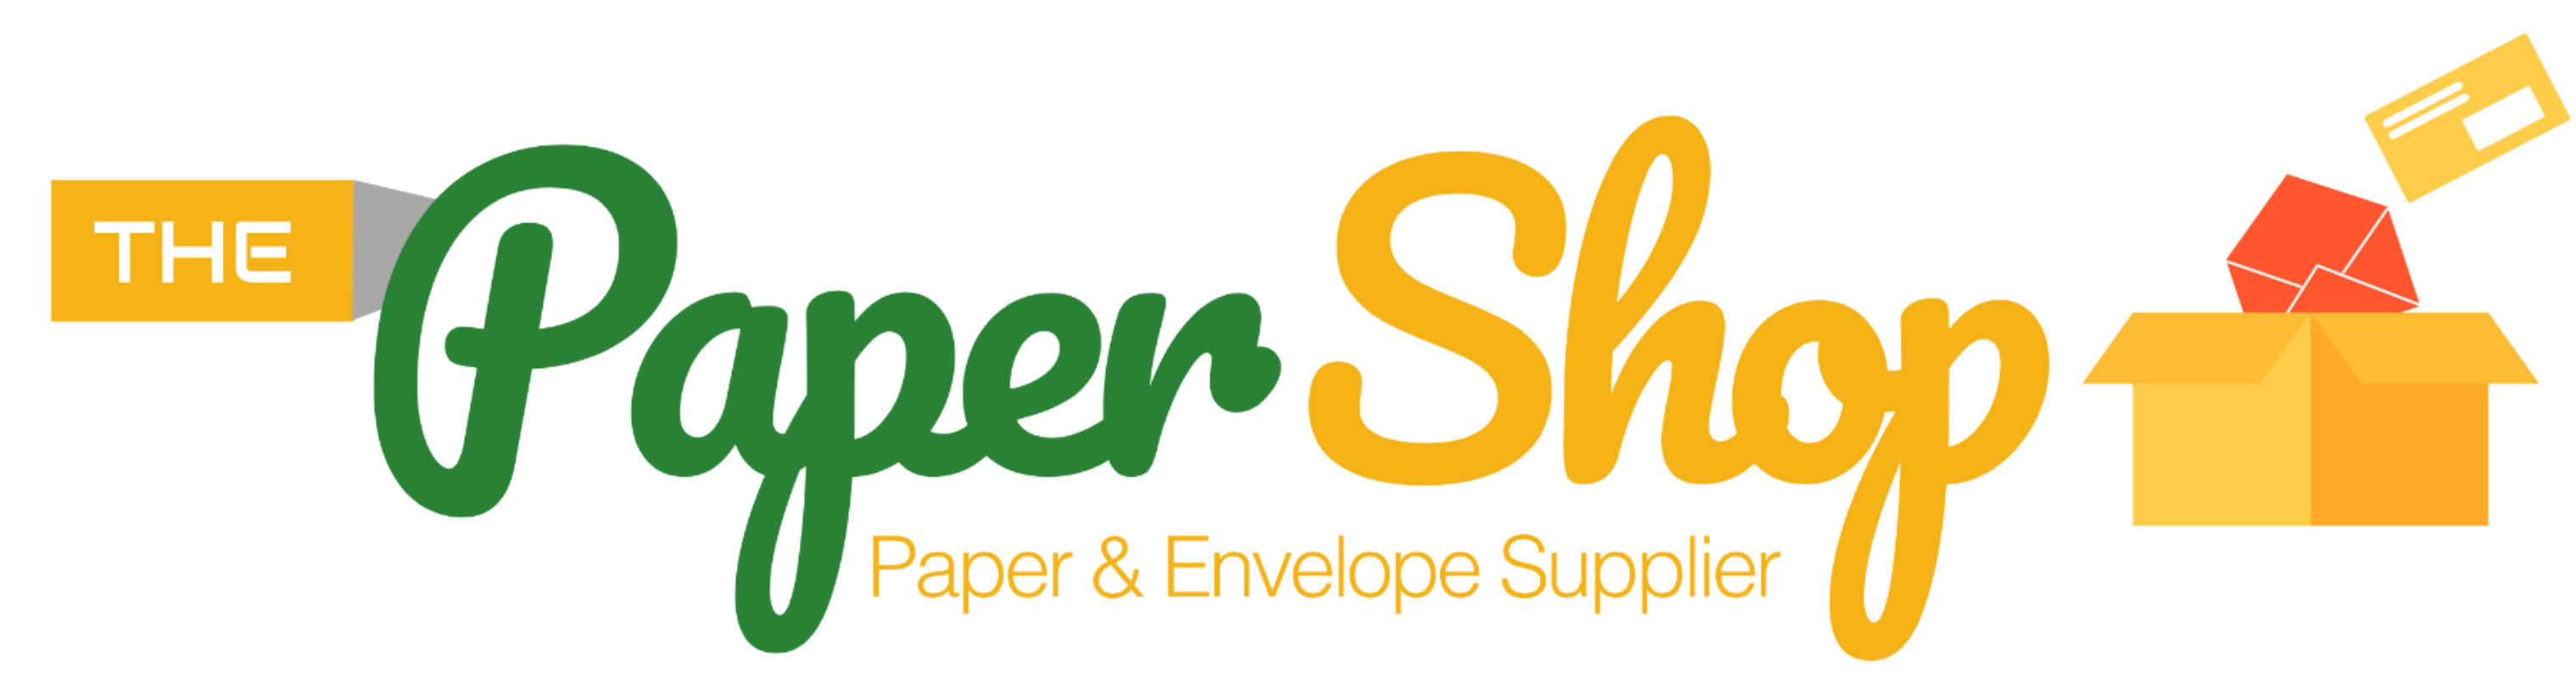 Paper Shop Online